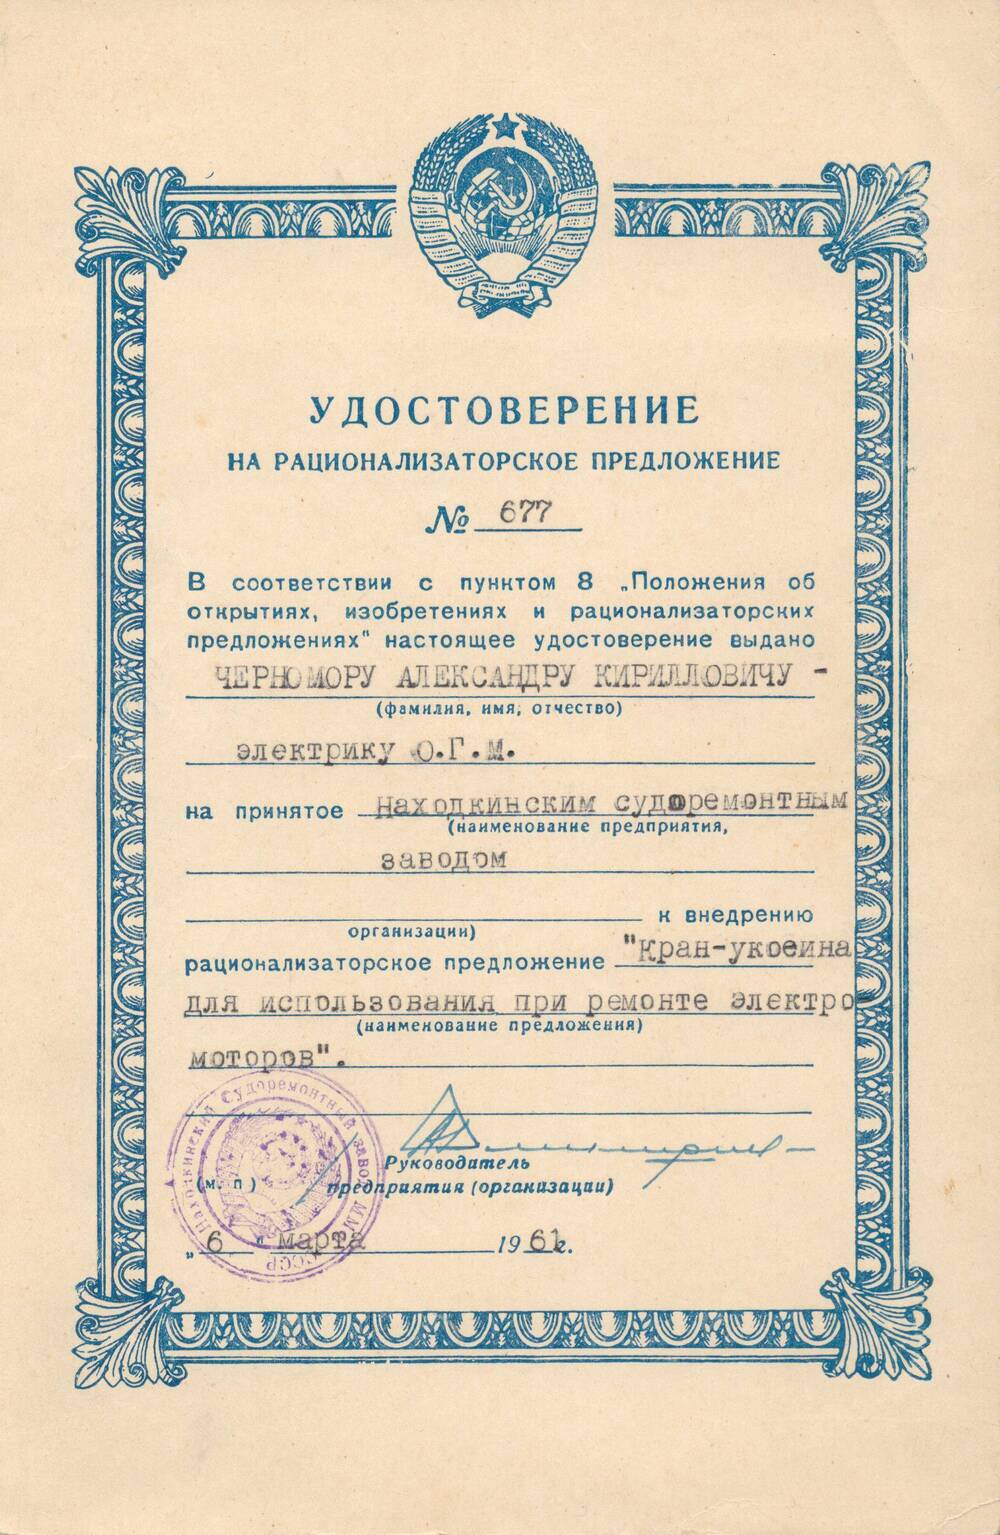 Удостоверение на рационализаторское предложение №677 Черномора Александра Кирилловича.